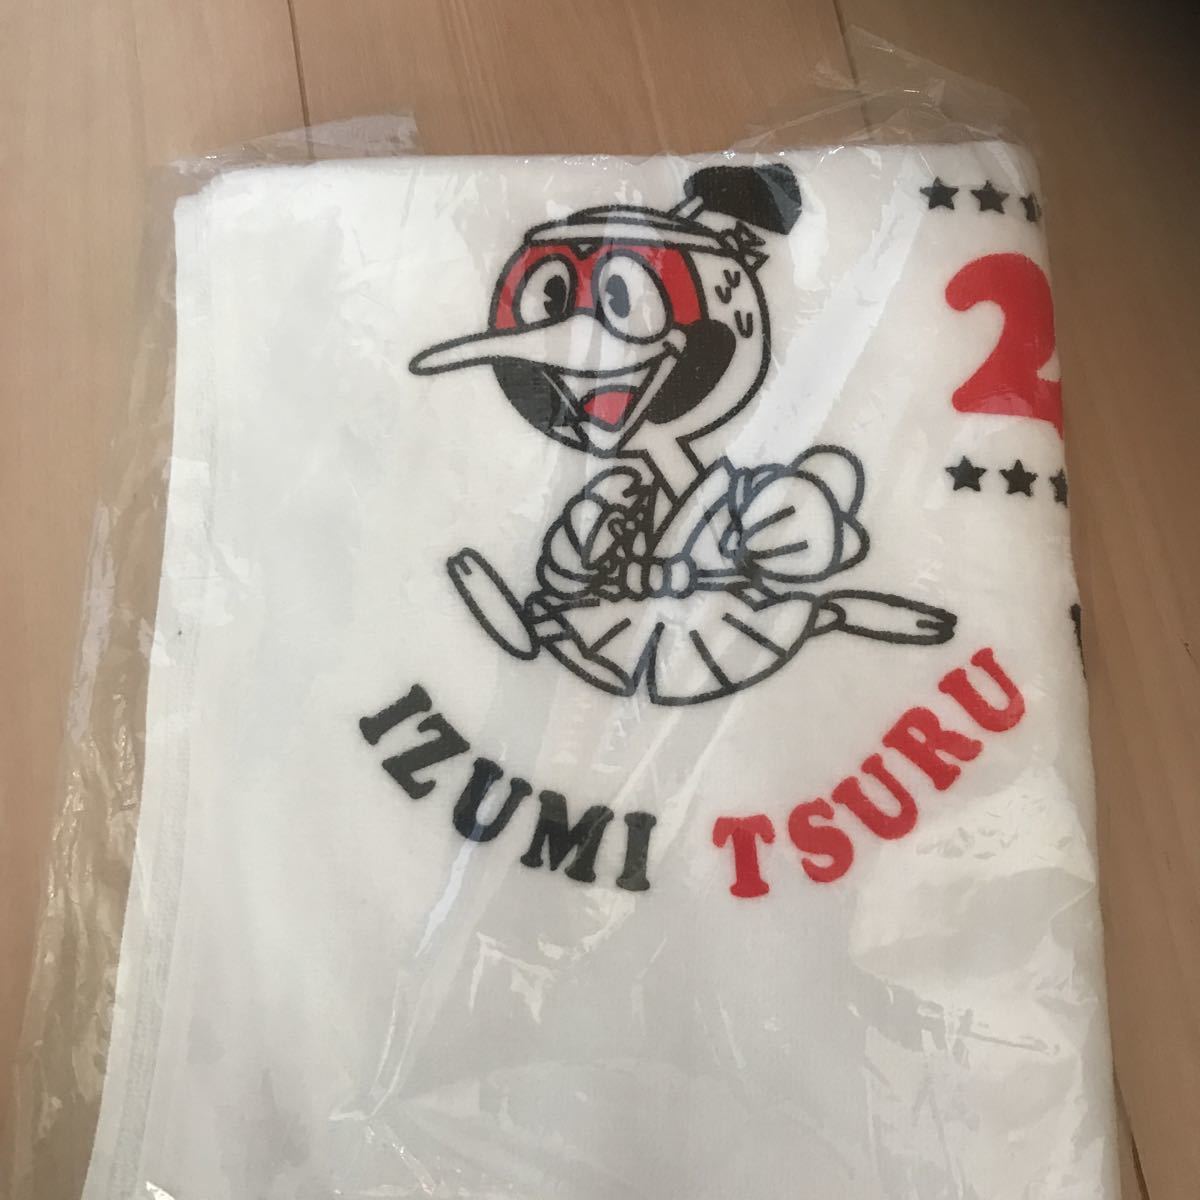  новый товар не использовался не продается довольно большой спорт полотенце no. 24 раз Кагосима префектура . вода город tsuru марафон собрание участие .nobeliti размер ширина 108. длина 40.